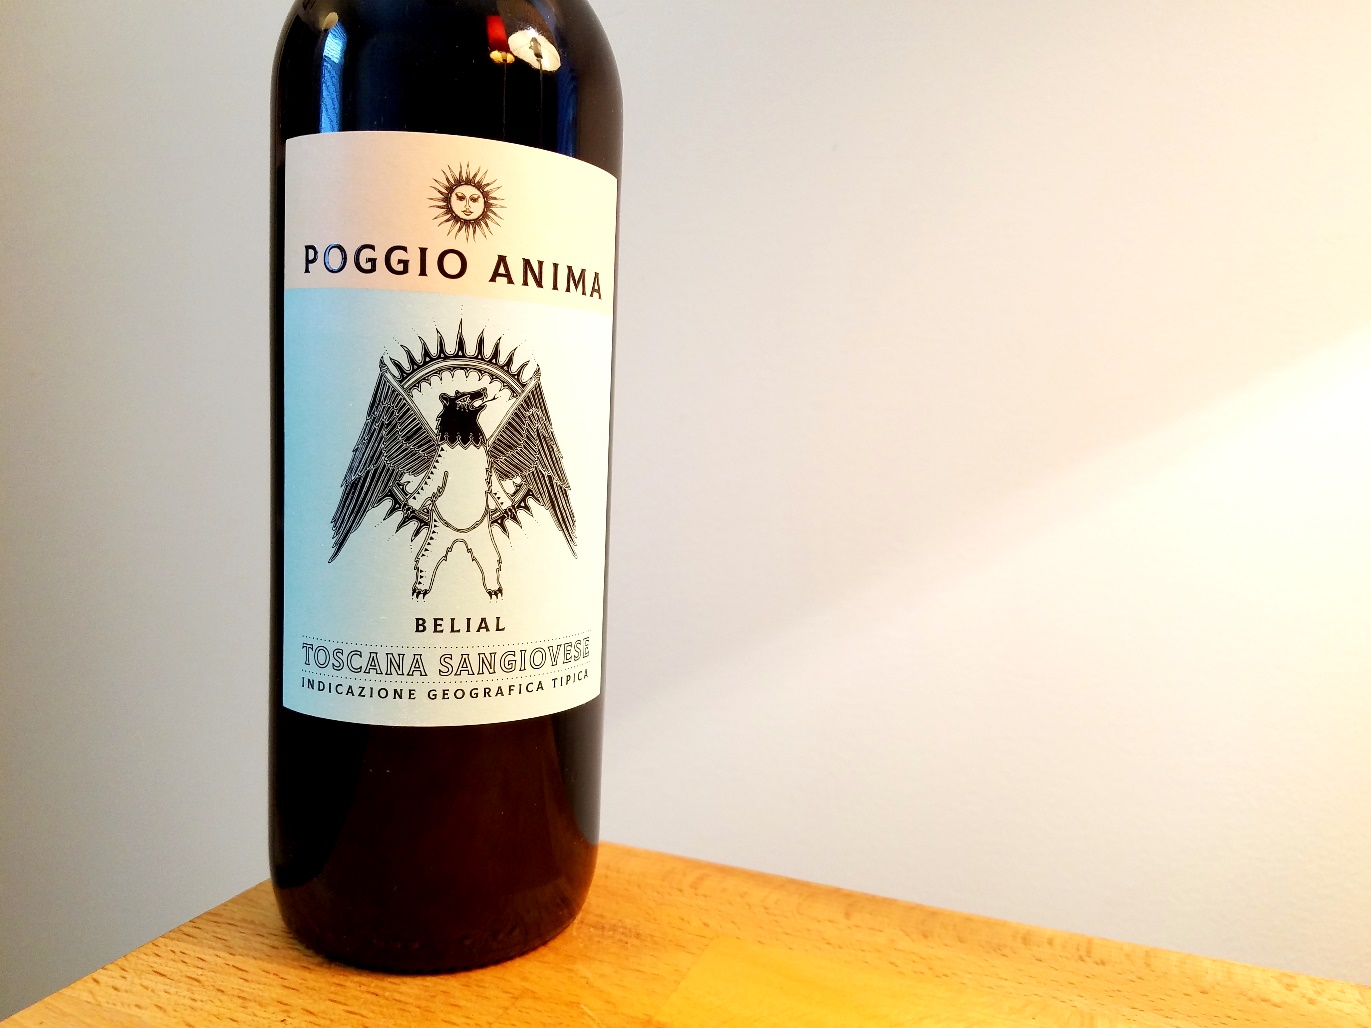 Poggio Anima, Belial Toscana IGT Sangiovese 2019, Tuscany, Italy, Wine Casual